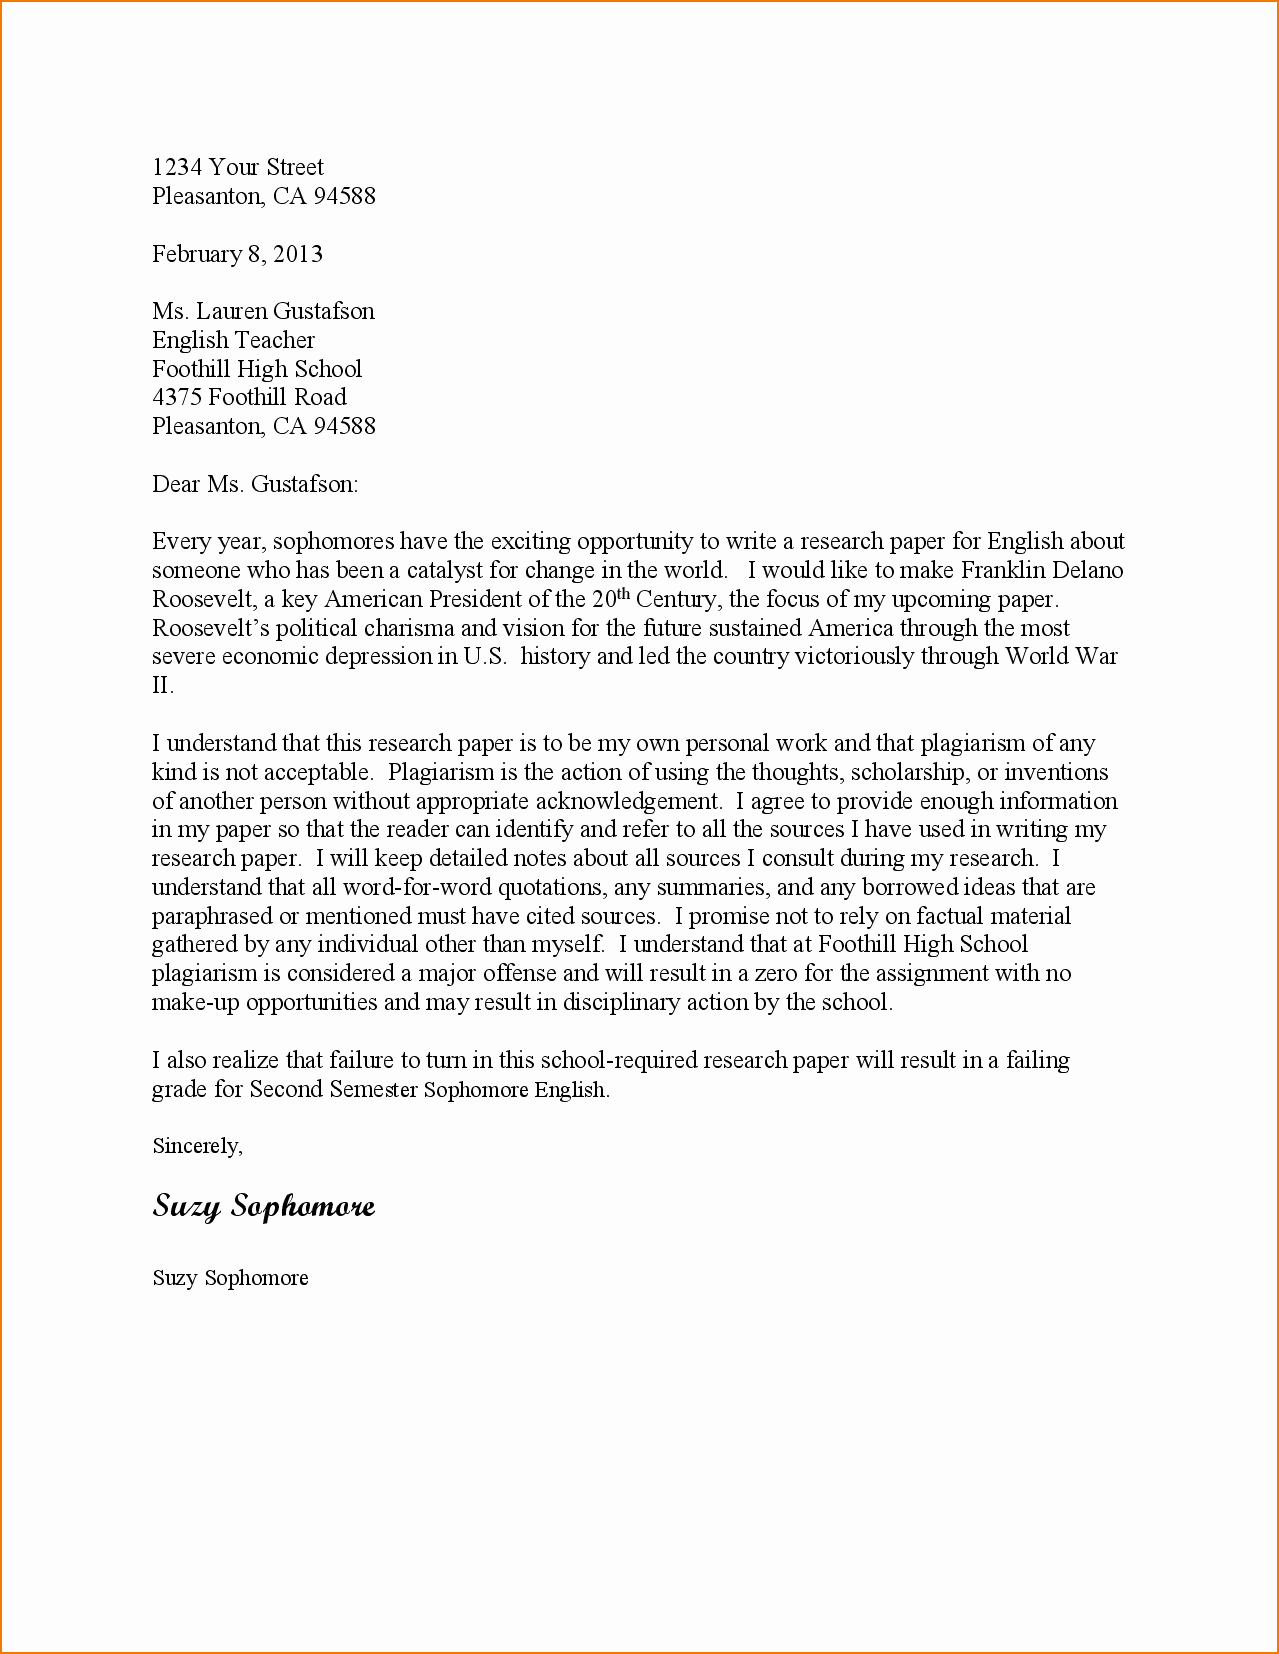 Company Rebrand Letter Template - School Proposal Letter Lovely 4 Business Proposal Letter Sample